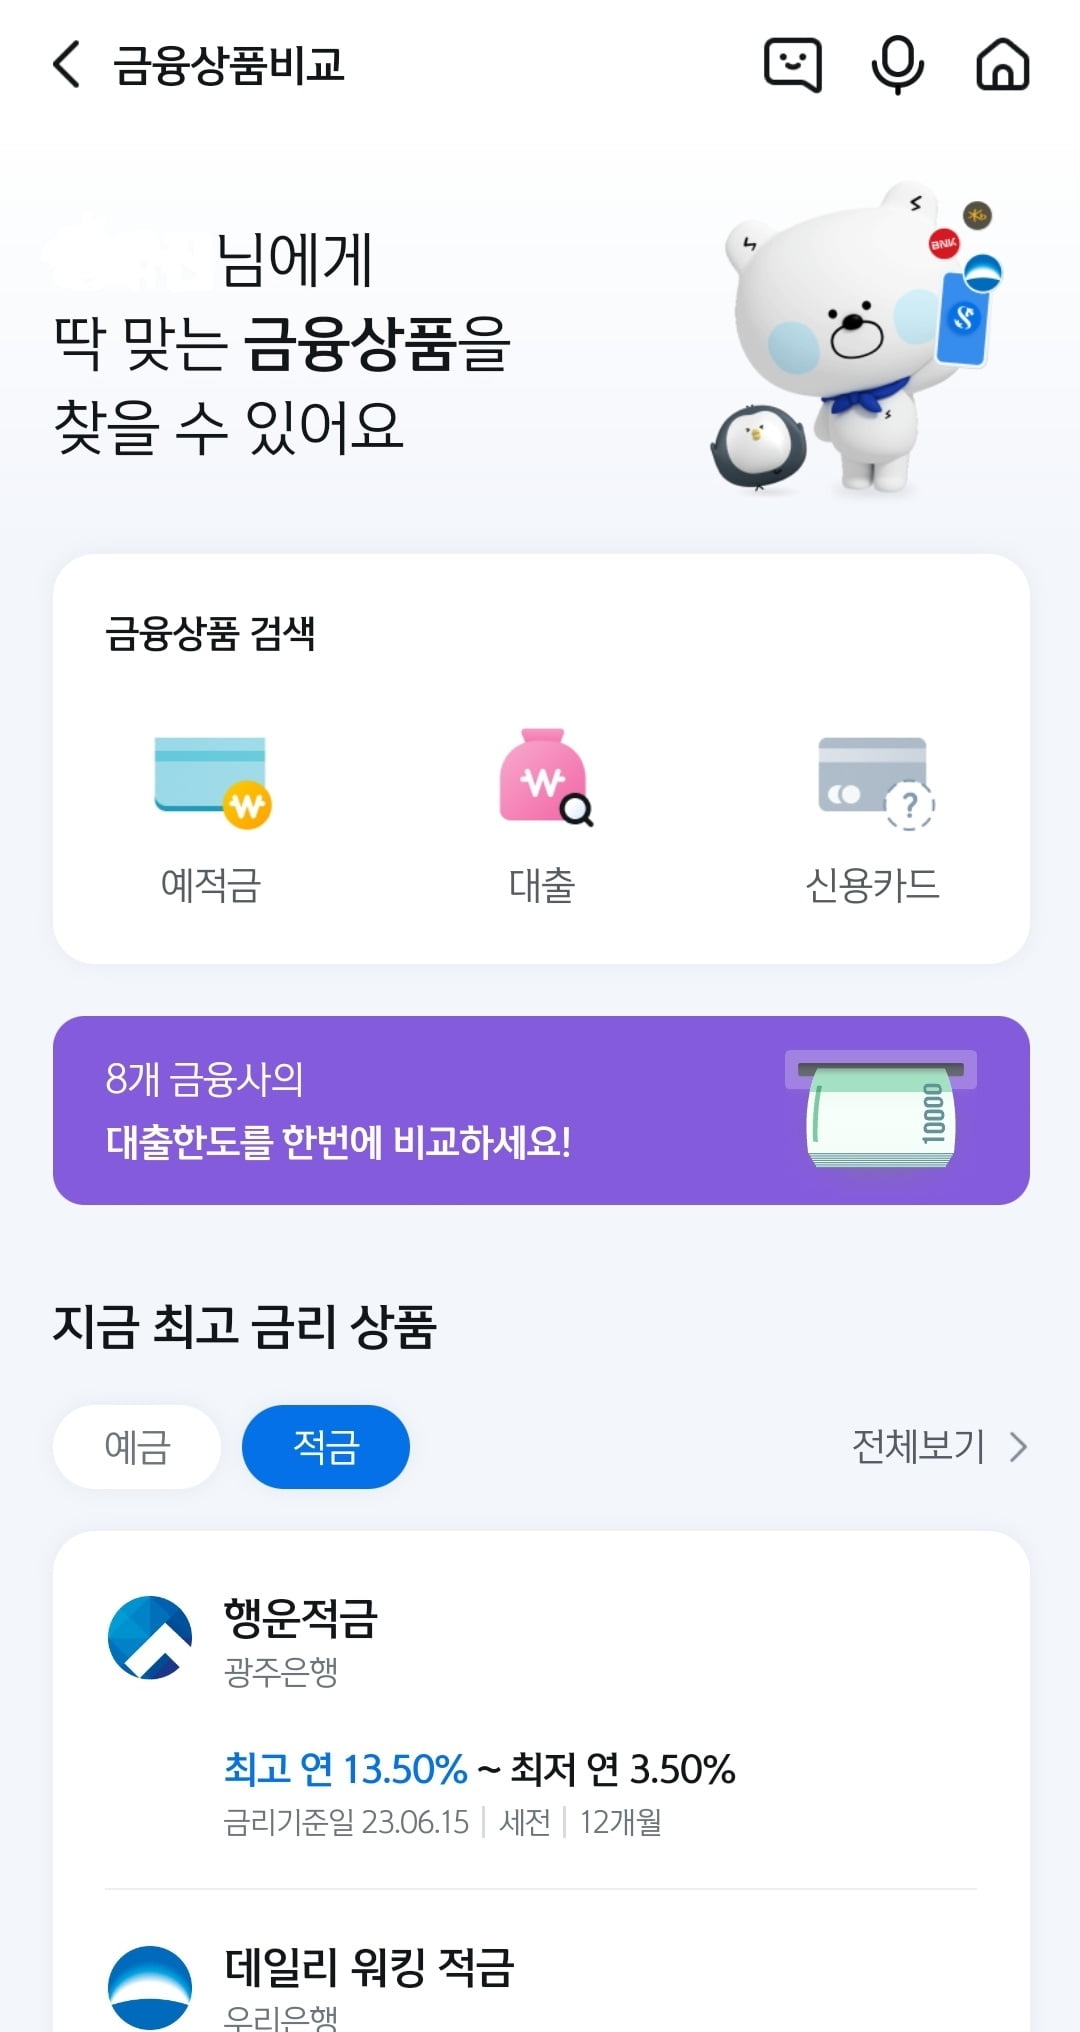 신한은행 앱화면 캡처. 정의진 기자